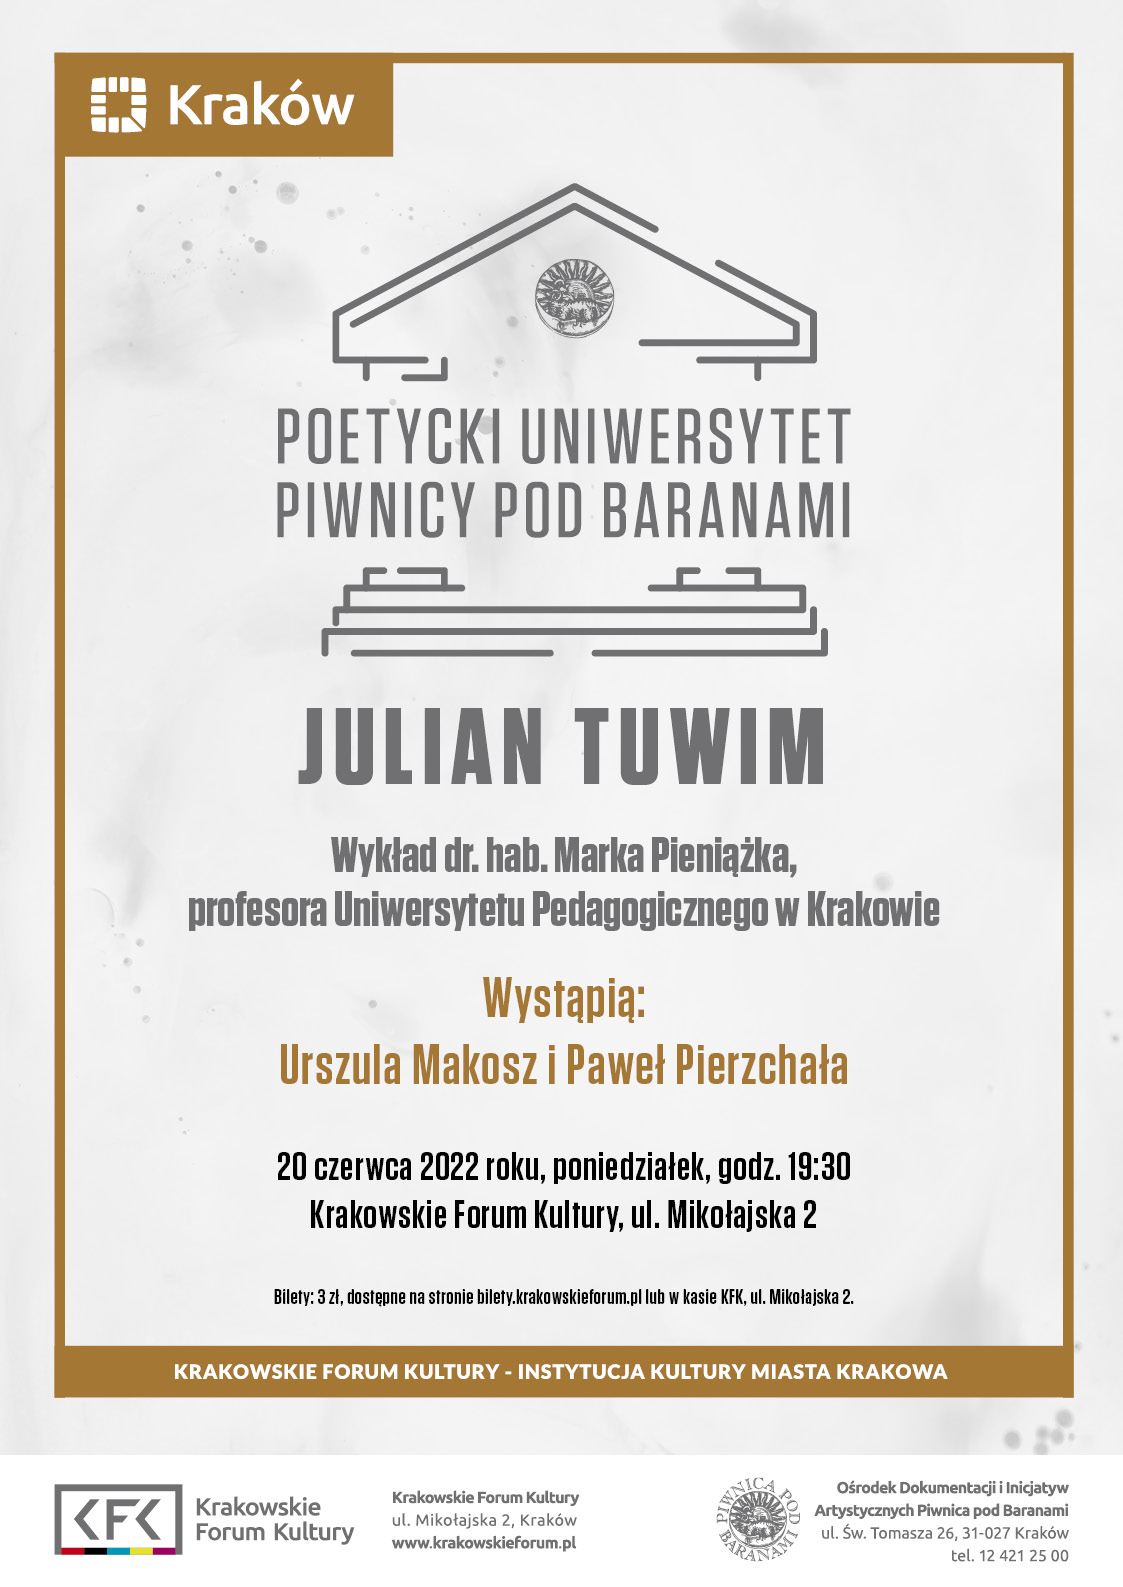 tuwim - Poetycki Uniwersytet Piwnicy pod Baranami: Julian Tuwim